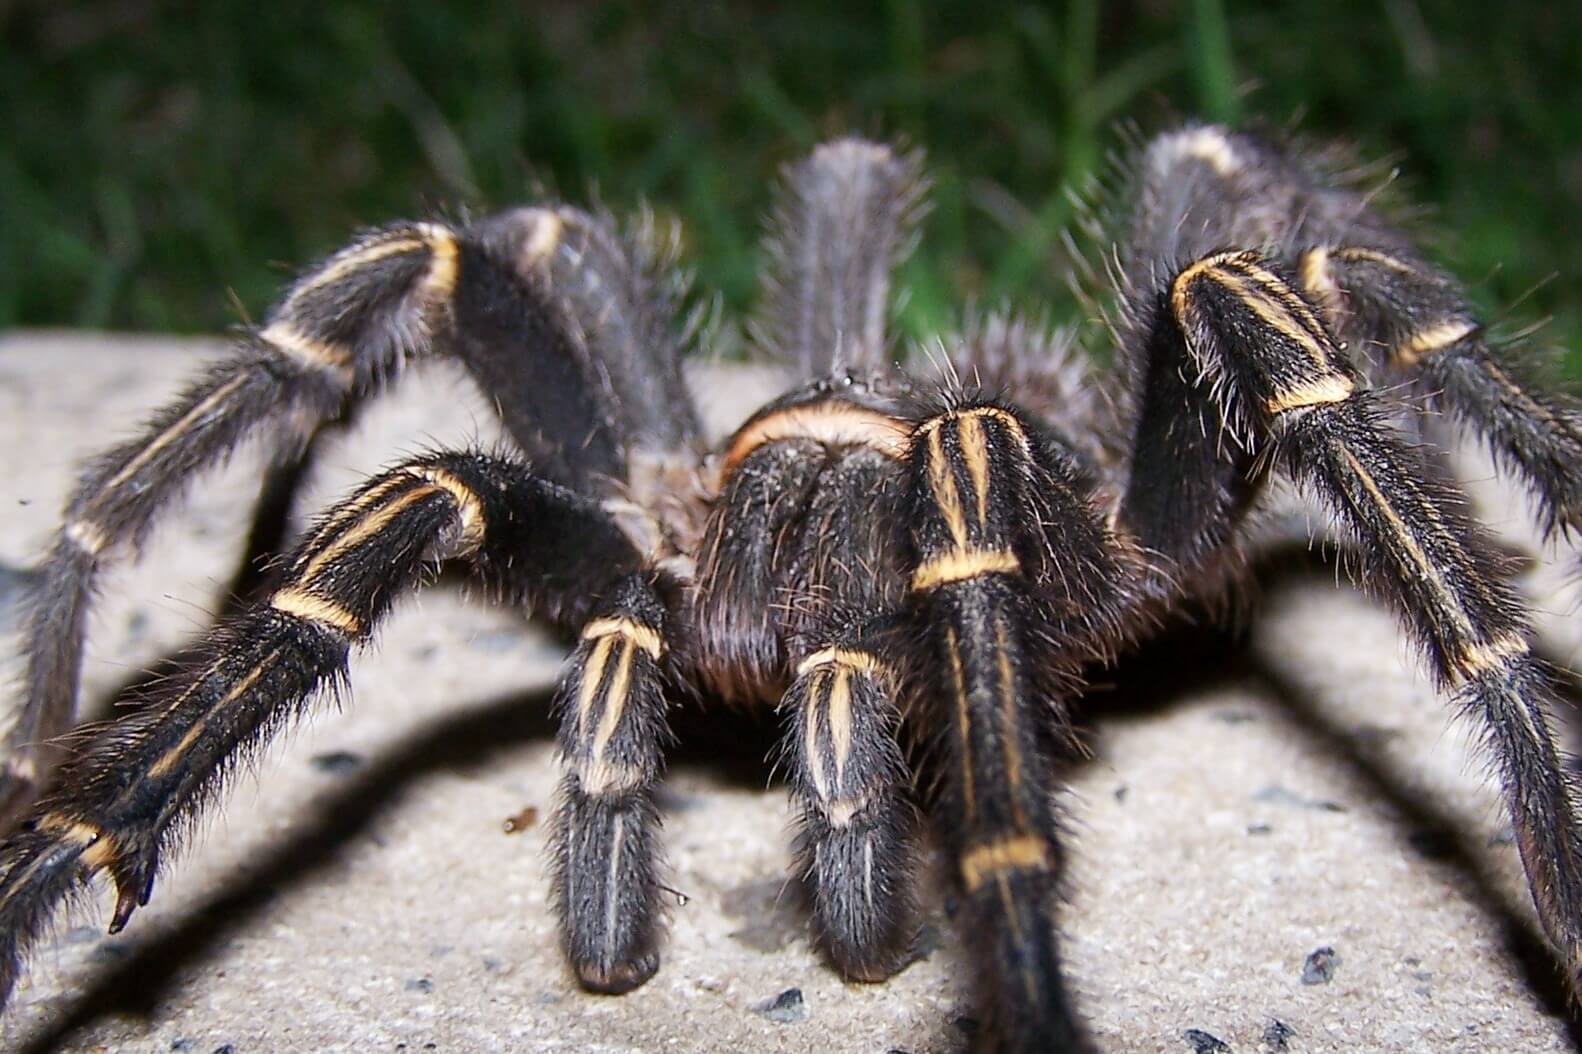 Die größte Spinne in der Welt wiegt wie ein Hund: als er noch interessant?